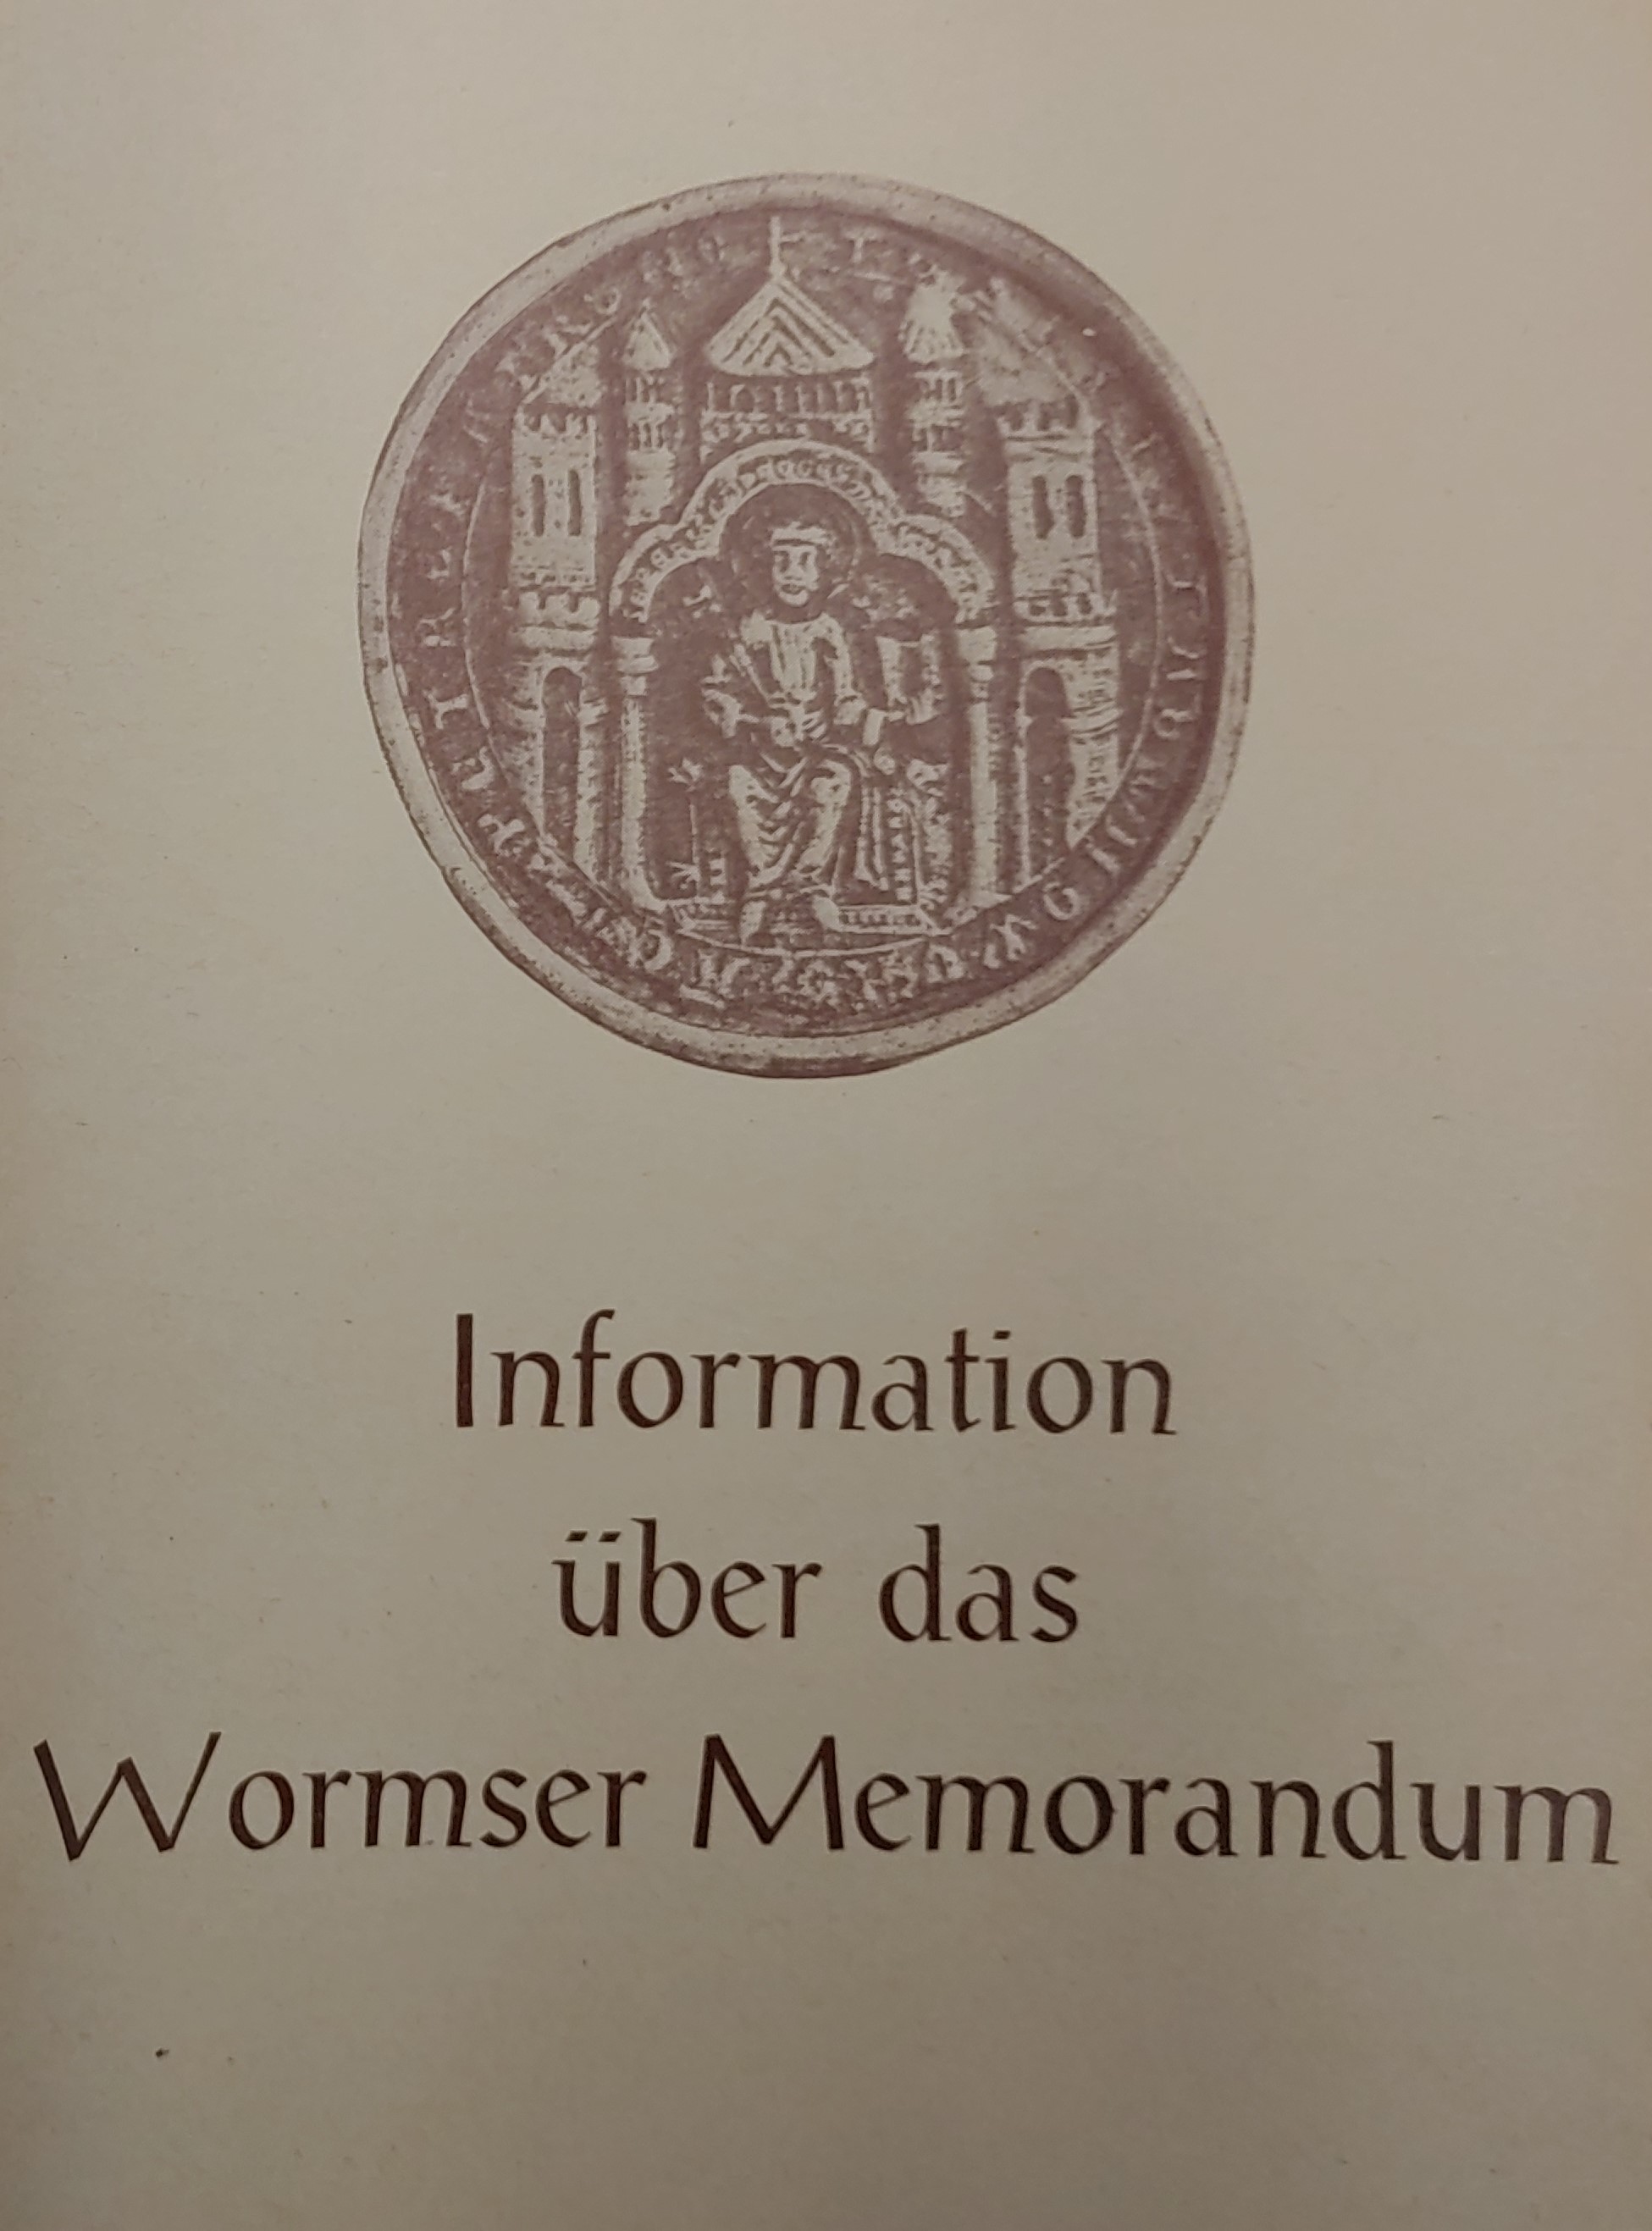 Titelseite eines Informationsblattes zum Wormser Memorandum von 1971